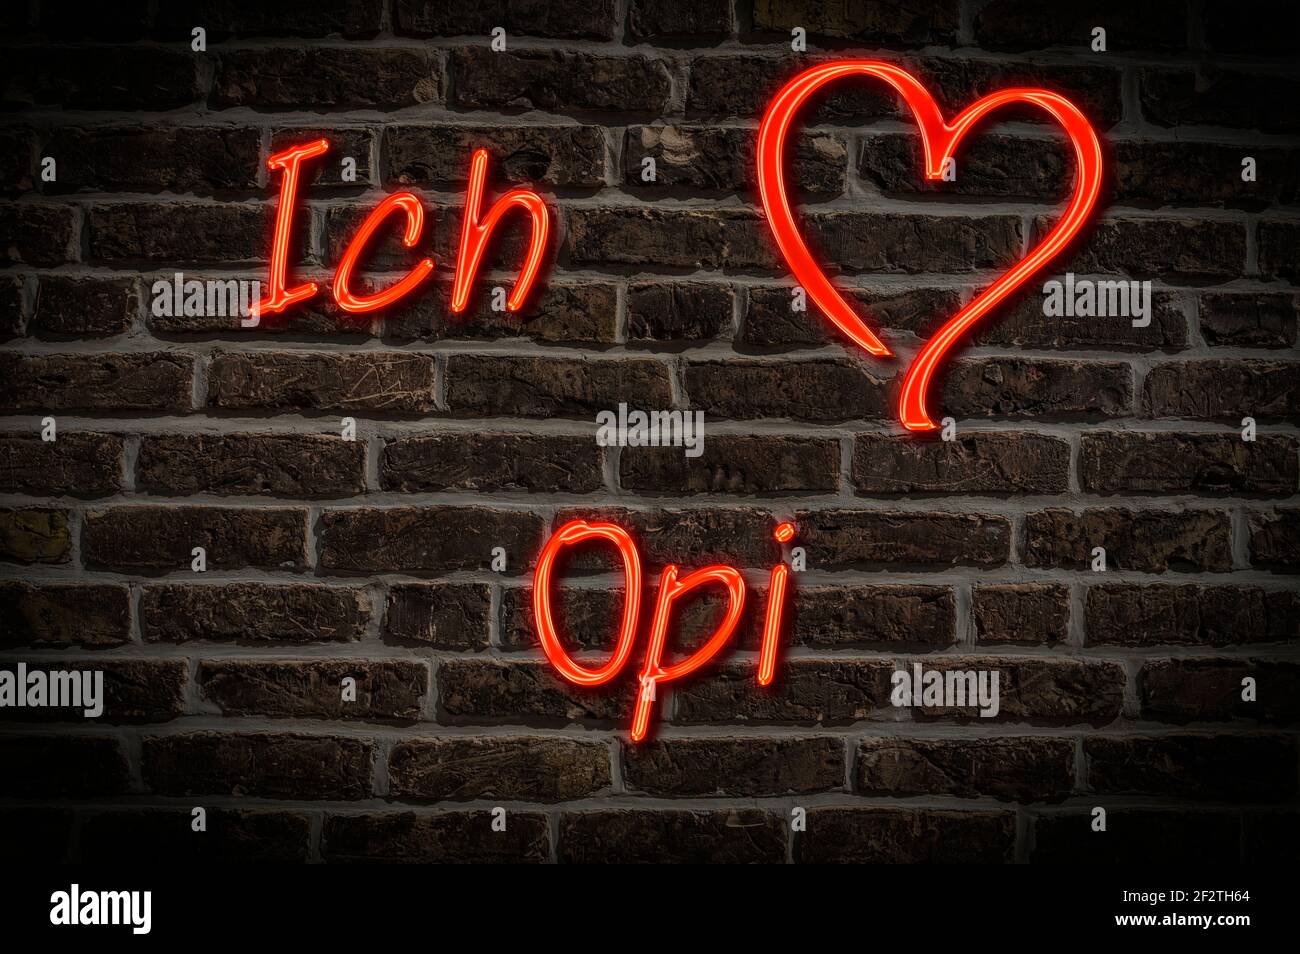 Leuchtreklame, Ich liebe Opi | Pubblicità illuminata, Ich liebe Opi (i love nonno) Foto Stock